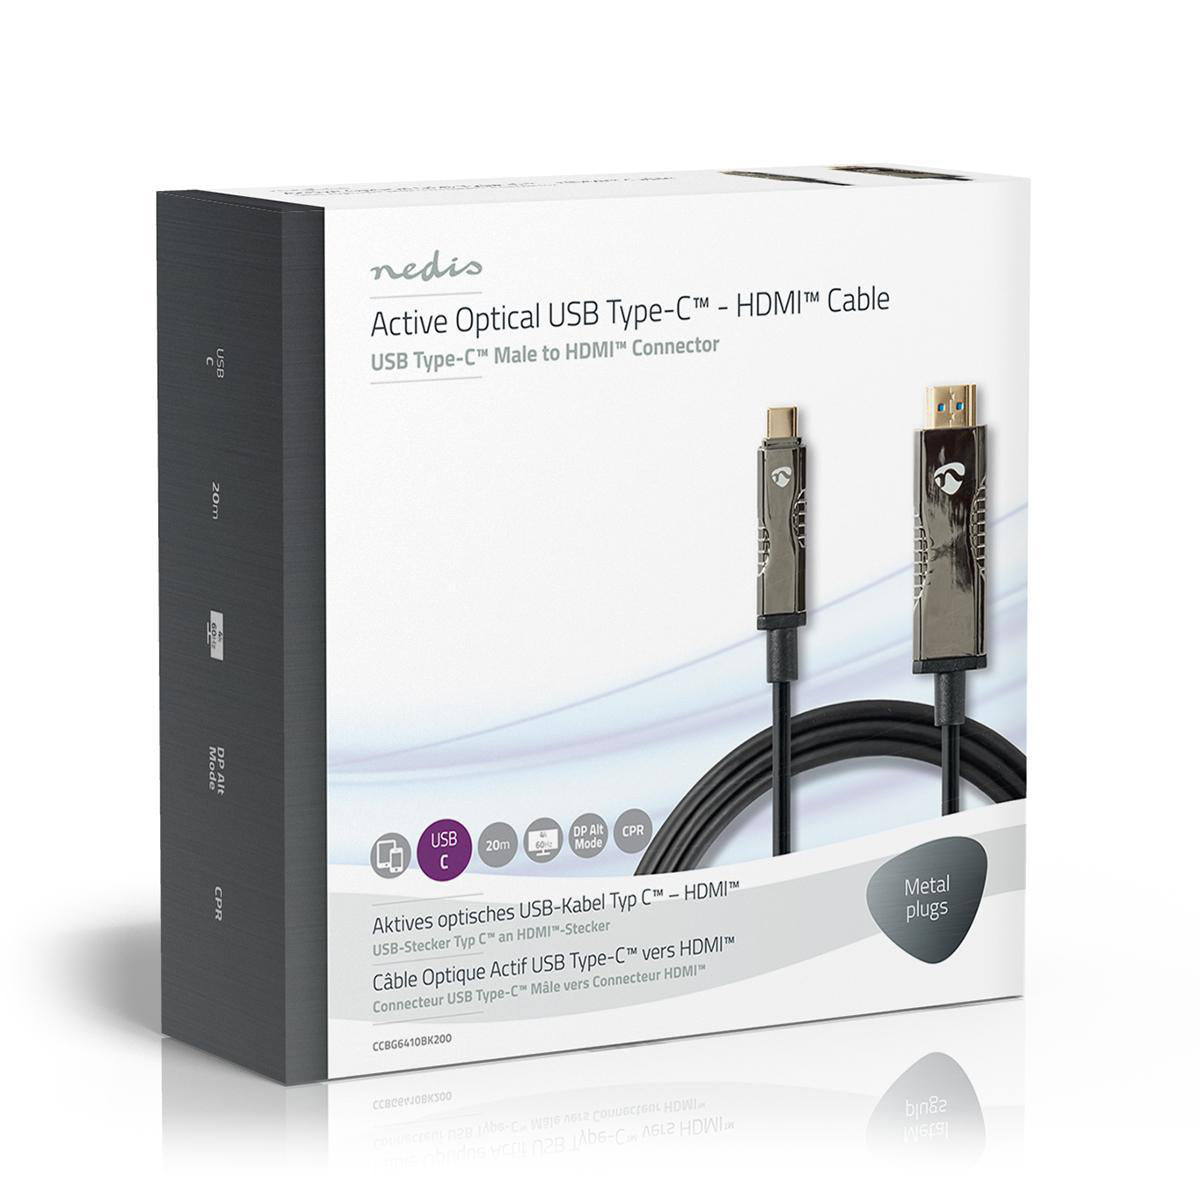 optische USB-Kabel (aktiv) | USB-C™ Stecker | HDMI™ Stecker | 18 Gbps | 20.0 m | Rund | PVC | Schwarz | Kartonverpackung